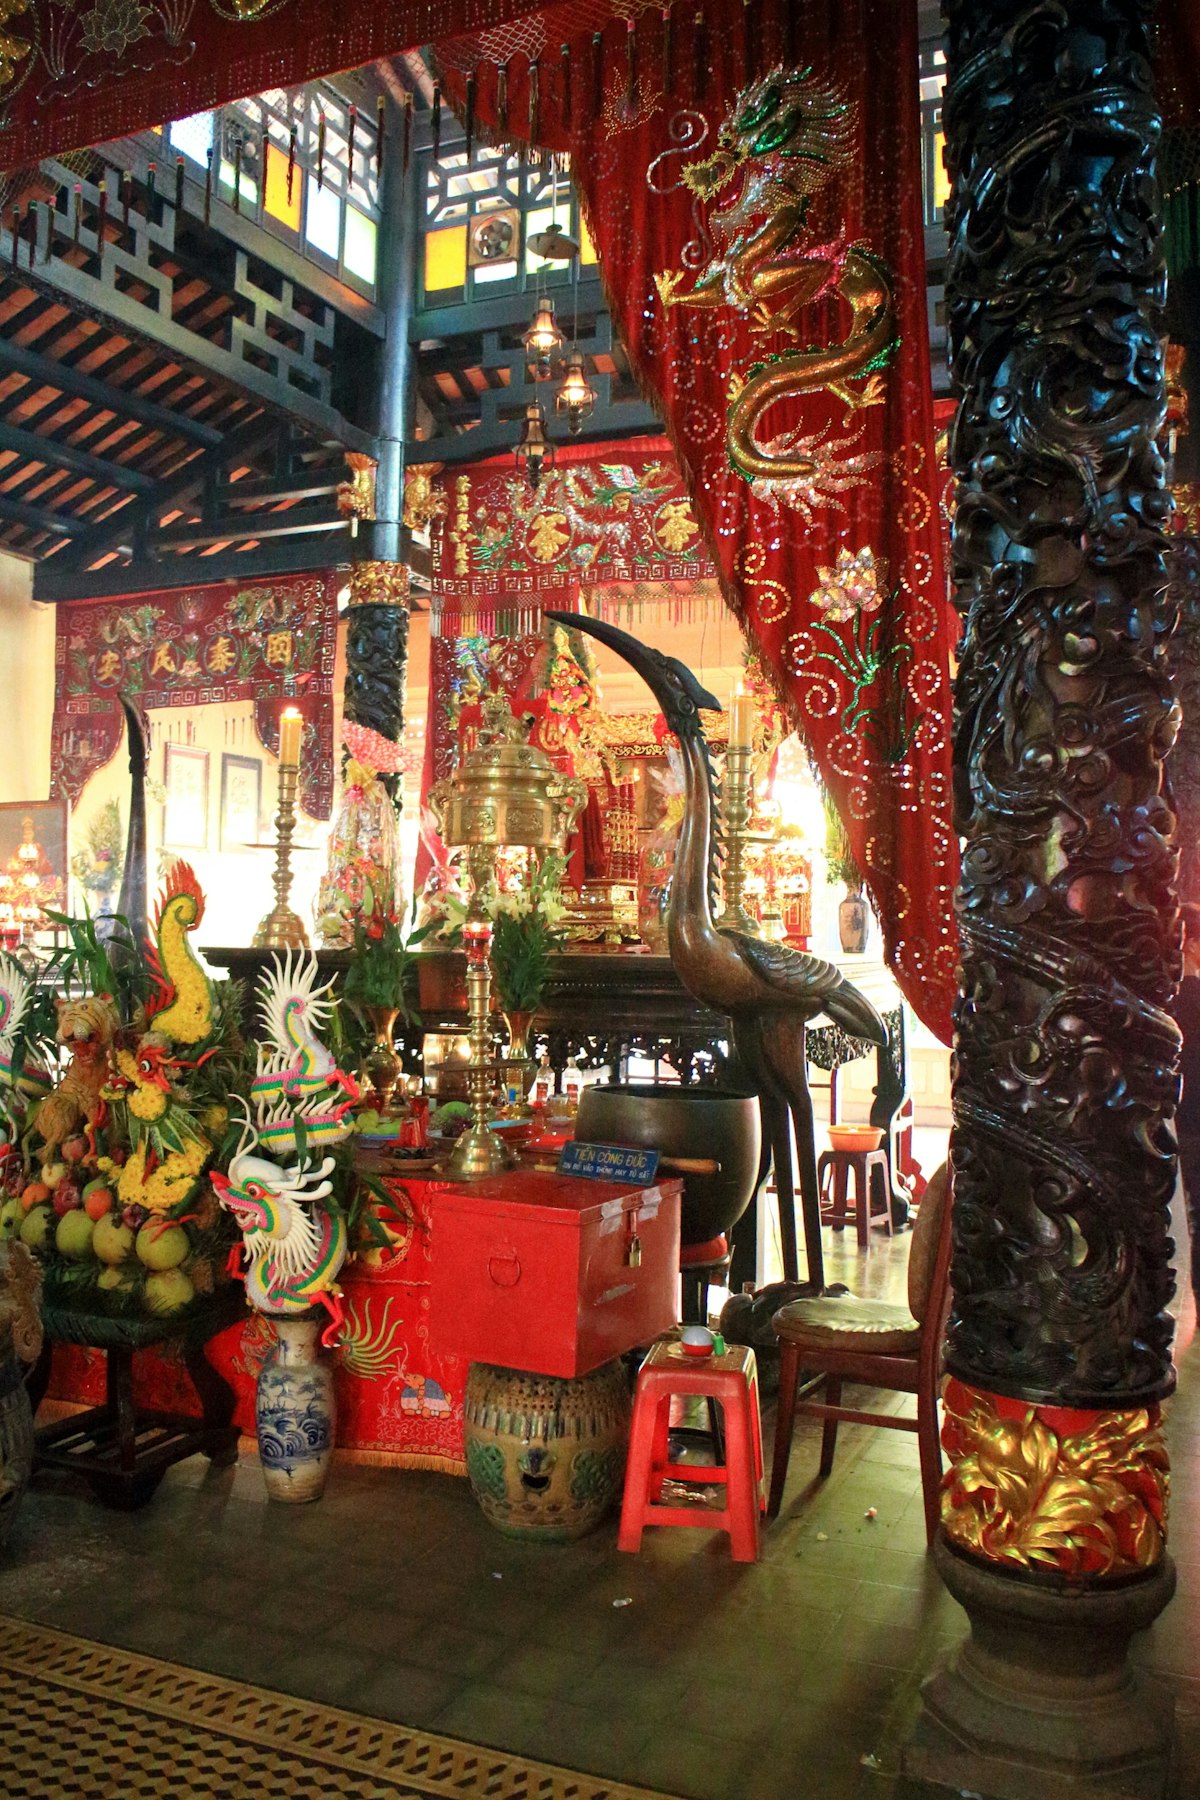 Le Van Duyet Temple,Vietnam.